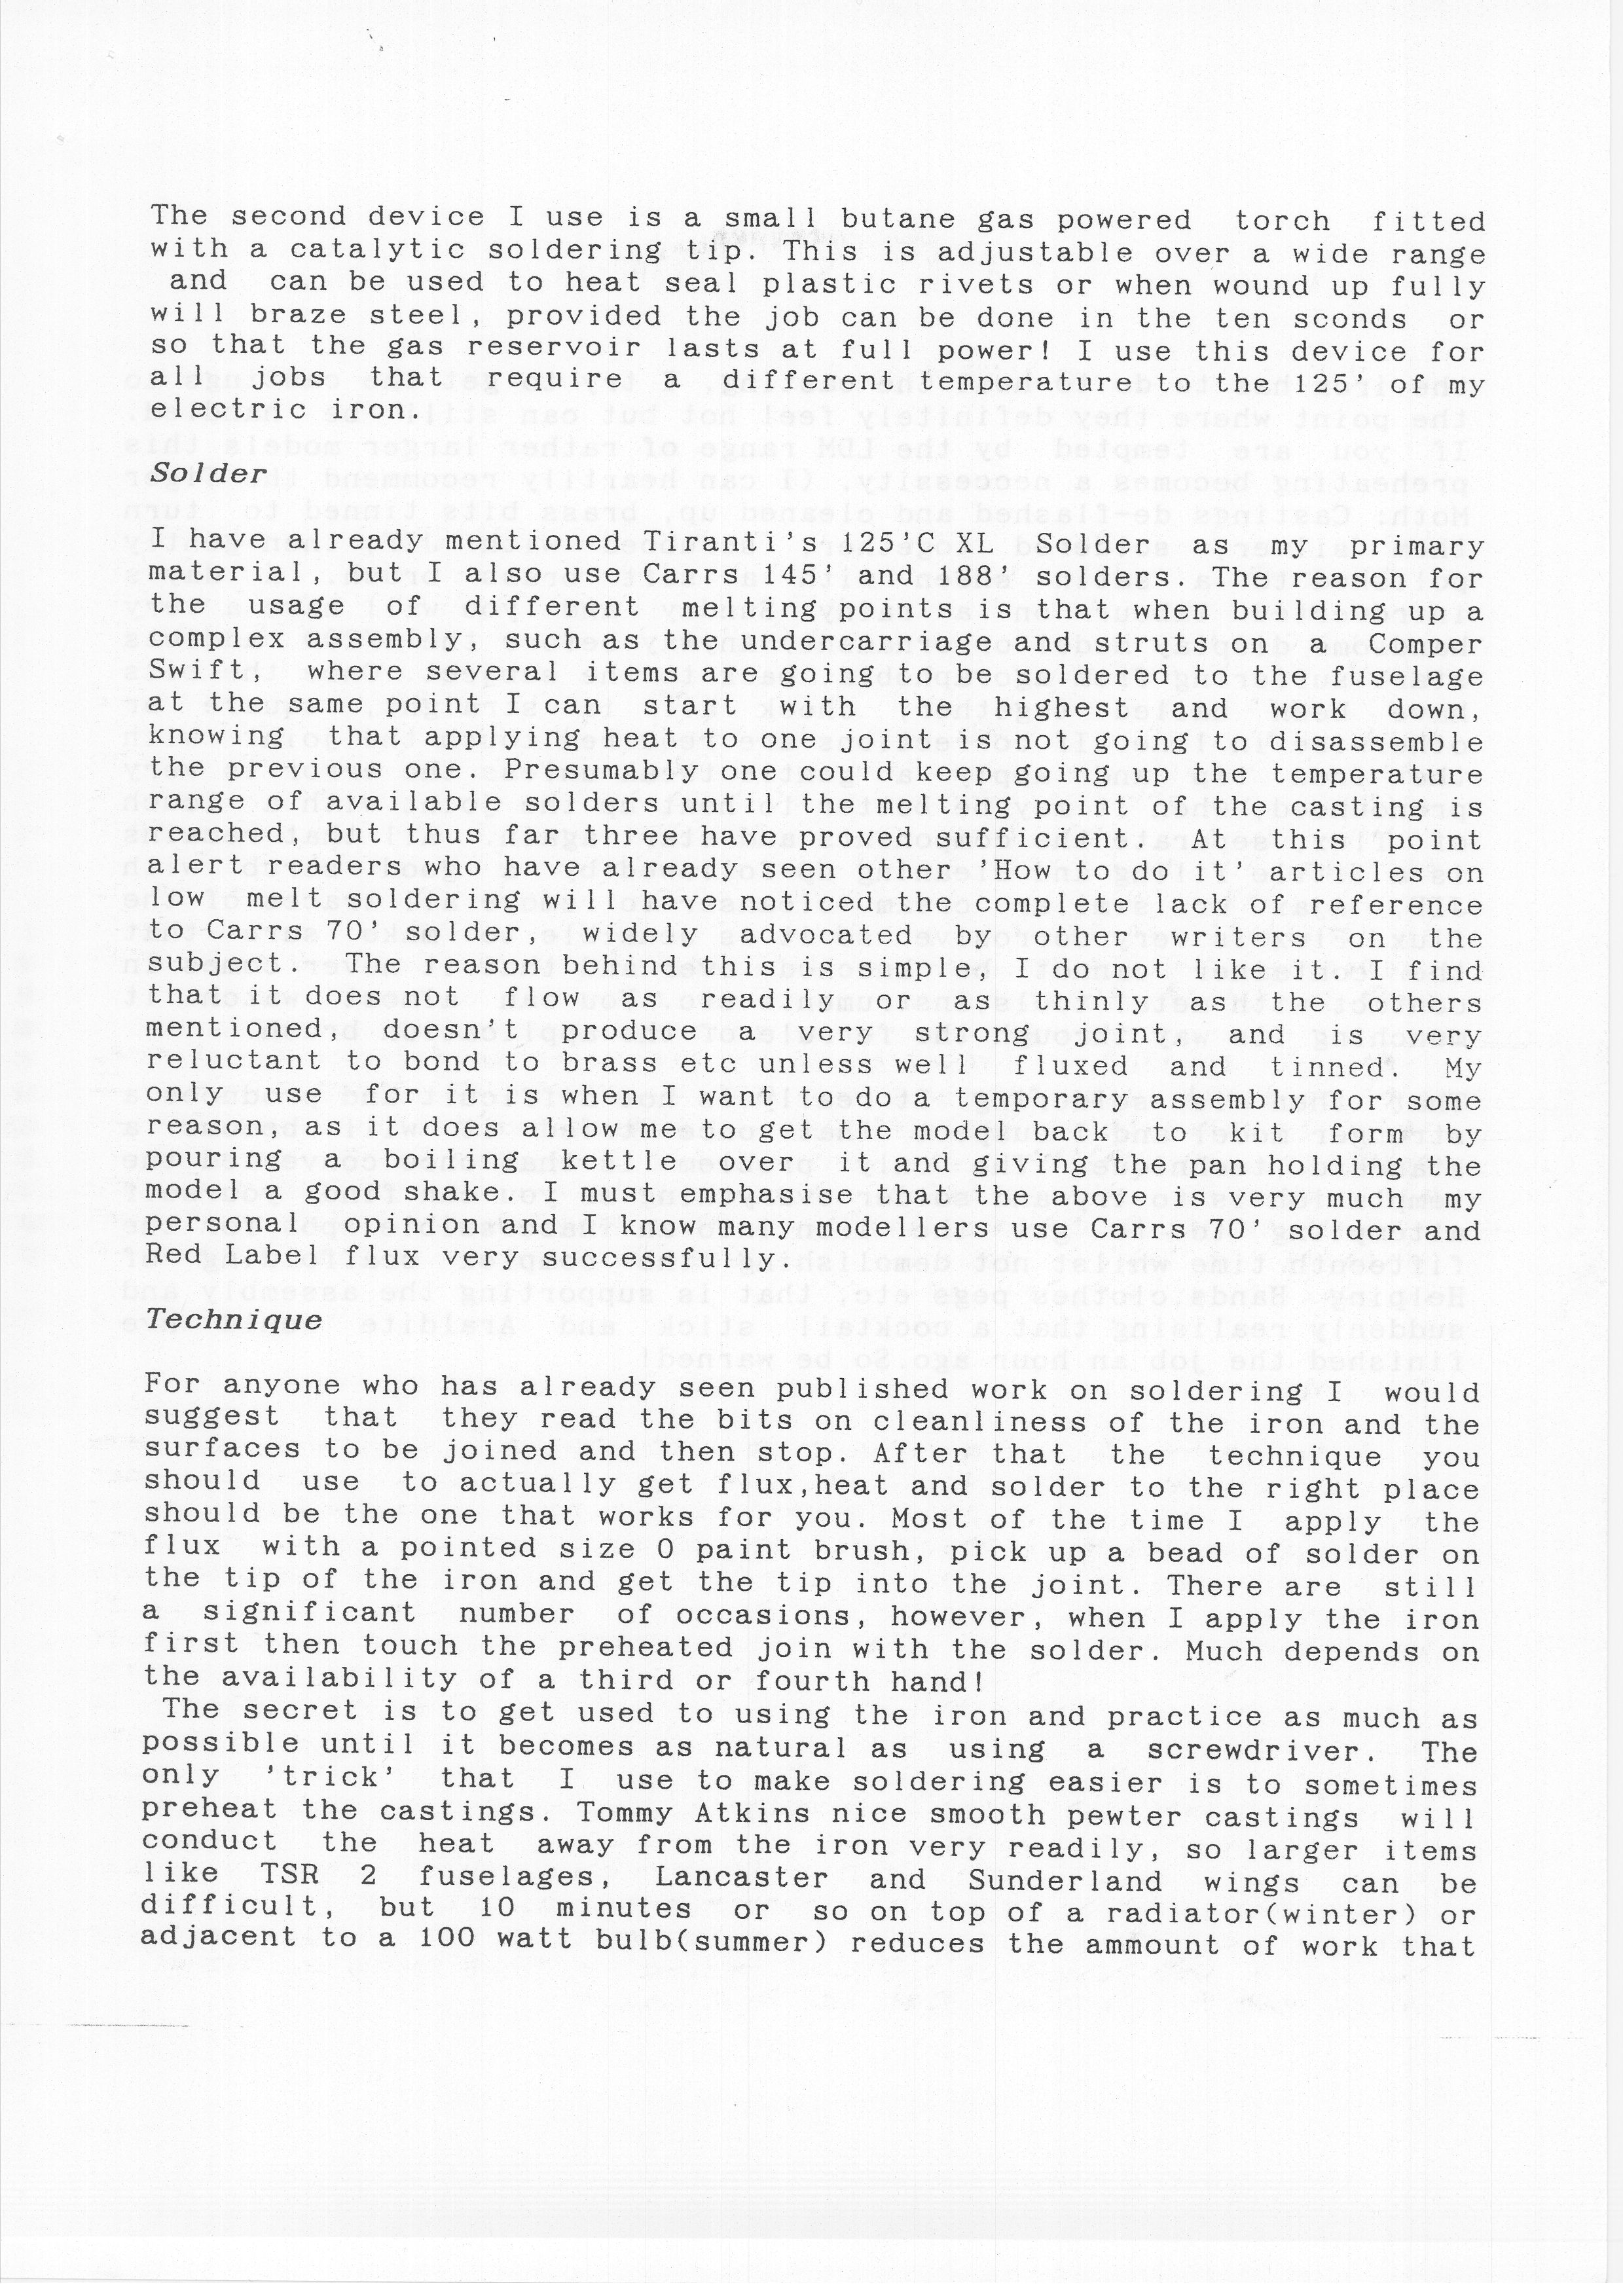 Norfolk Group_Newsletter No.4_November 199309.jpg